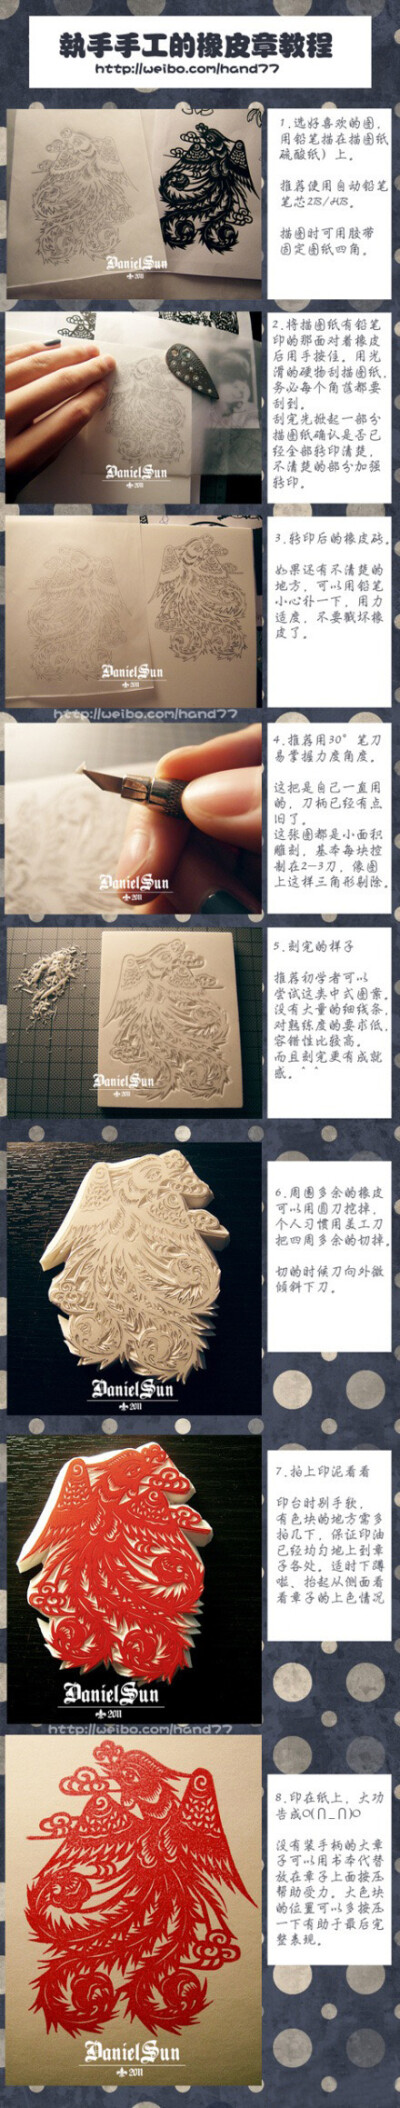 中国风的手工雕刻橡皮章，传统剪纸效果哦有木有！